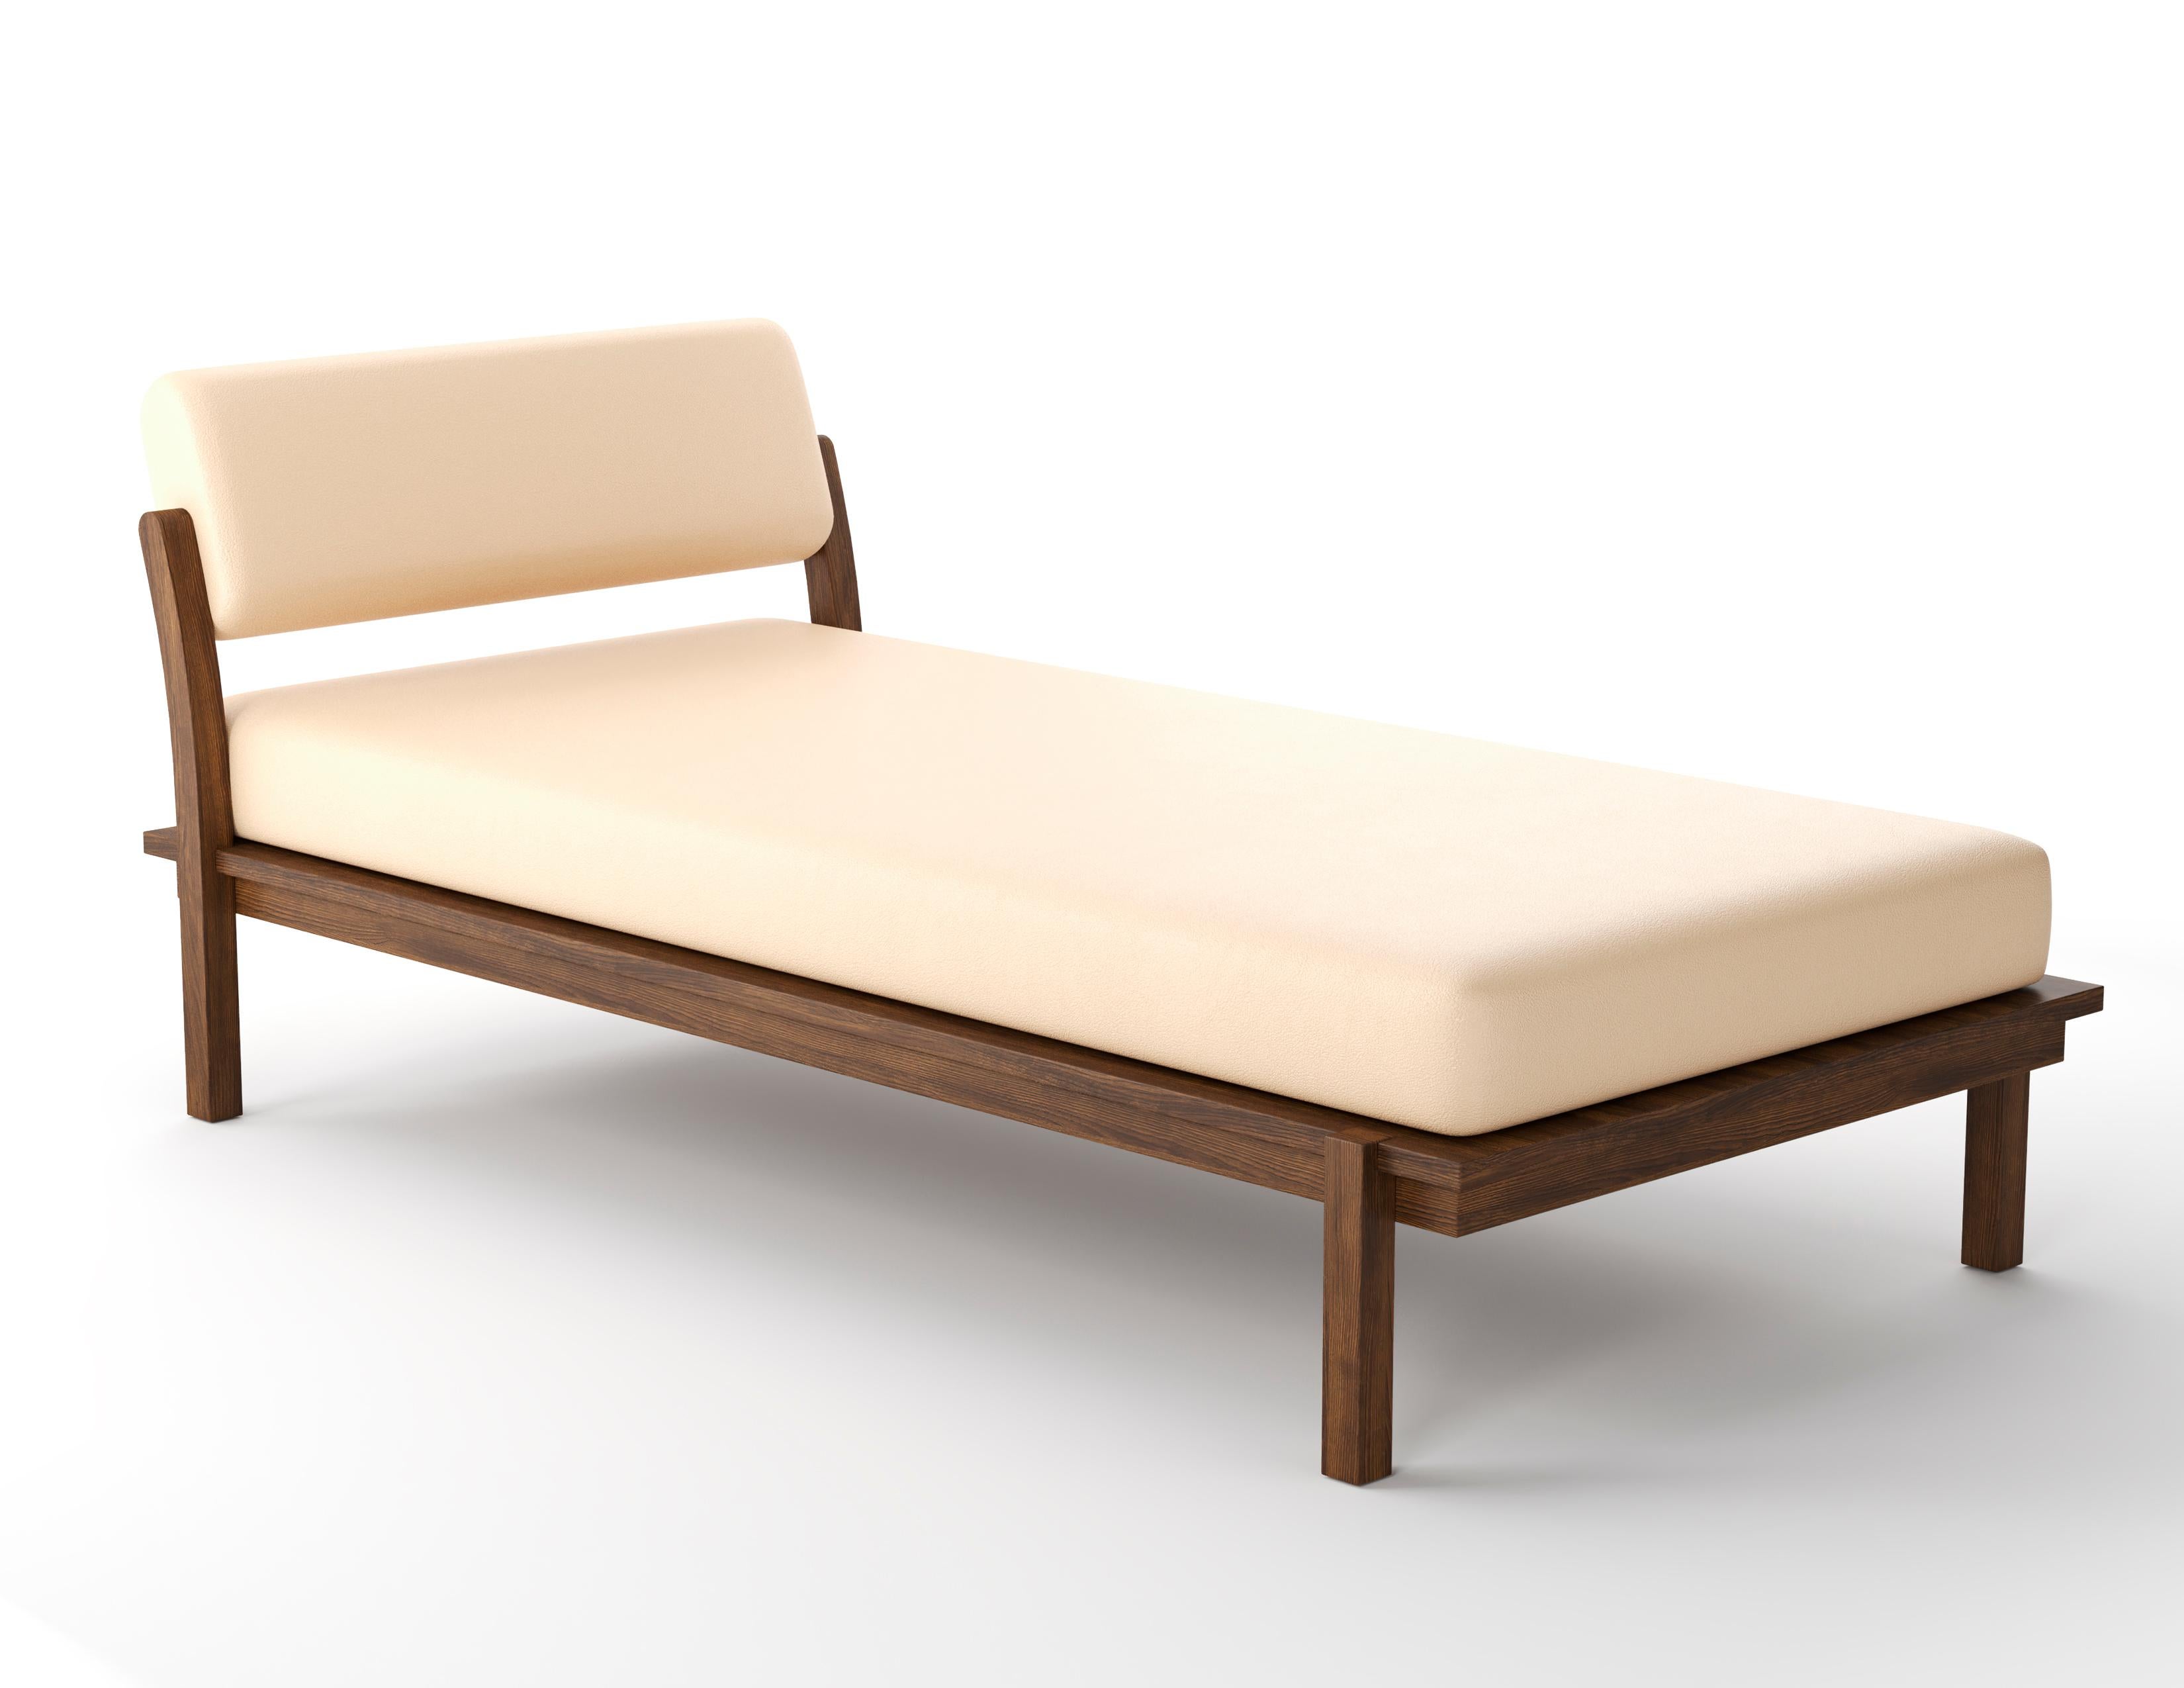 Das Douglas Daybed ist ein modernes Möbelstück - mit befestigter Nackenrolle und losem Sitzkissen aus hochdichtem Schaumstoff, umhüllt von Daunen und Federn - Holzrahmen mit sorgfältig ausgewähltem Holz, alles handgeschnitzt in unserem Geschäft in